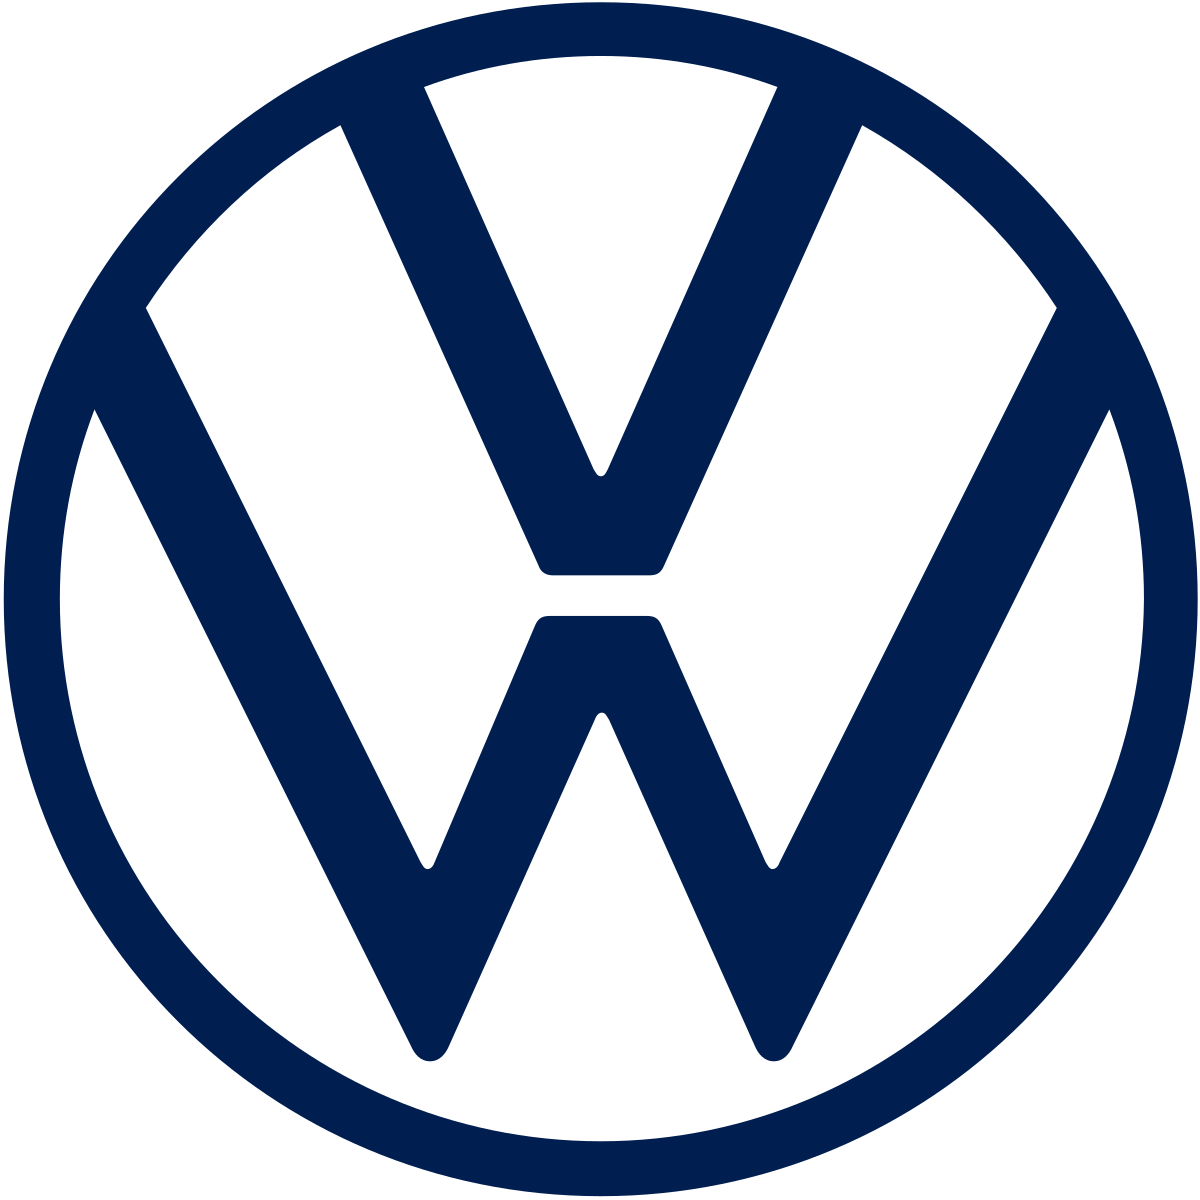 Volkswagen_logo_2019.svg.png